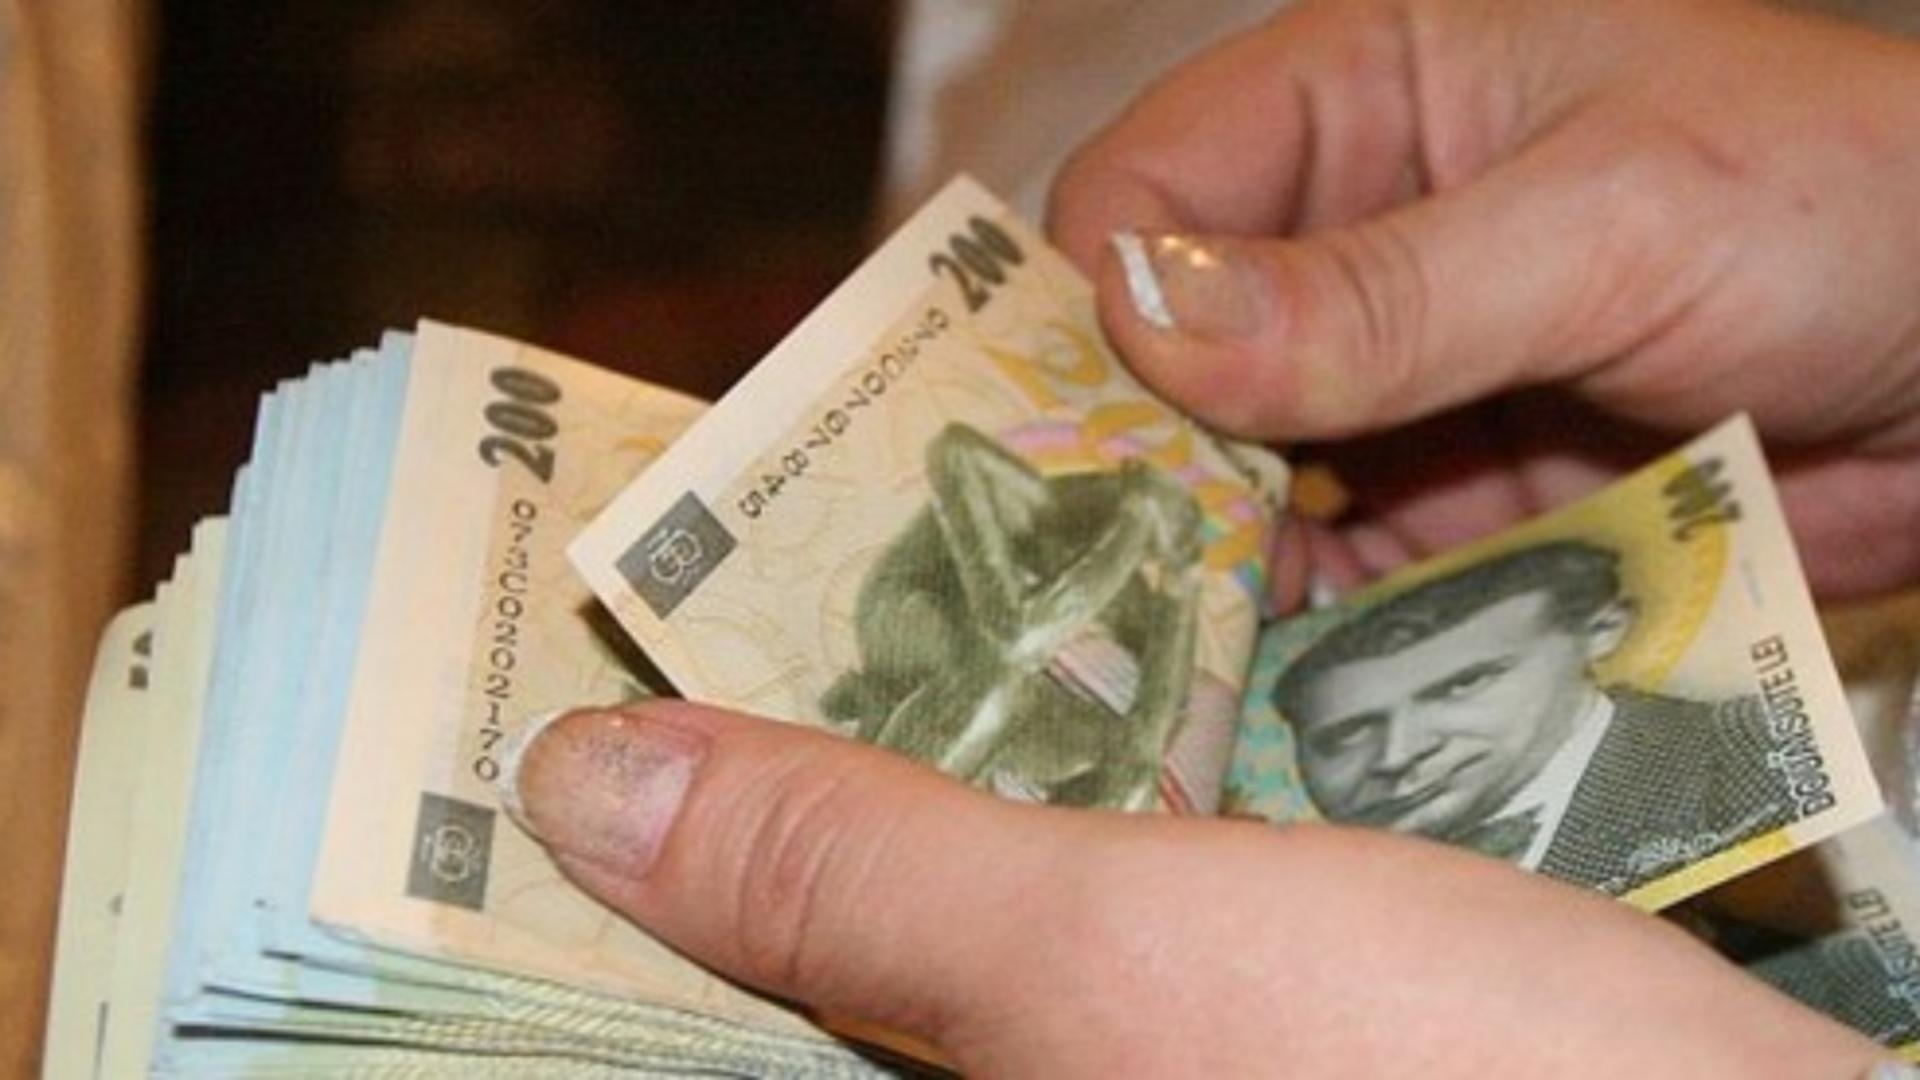 Şapte din zece români și-ar dori să obțină un credit bancar în sistem online